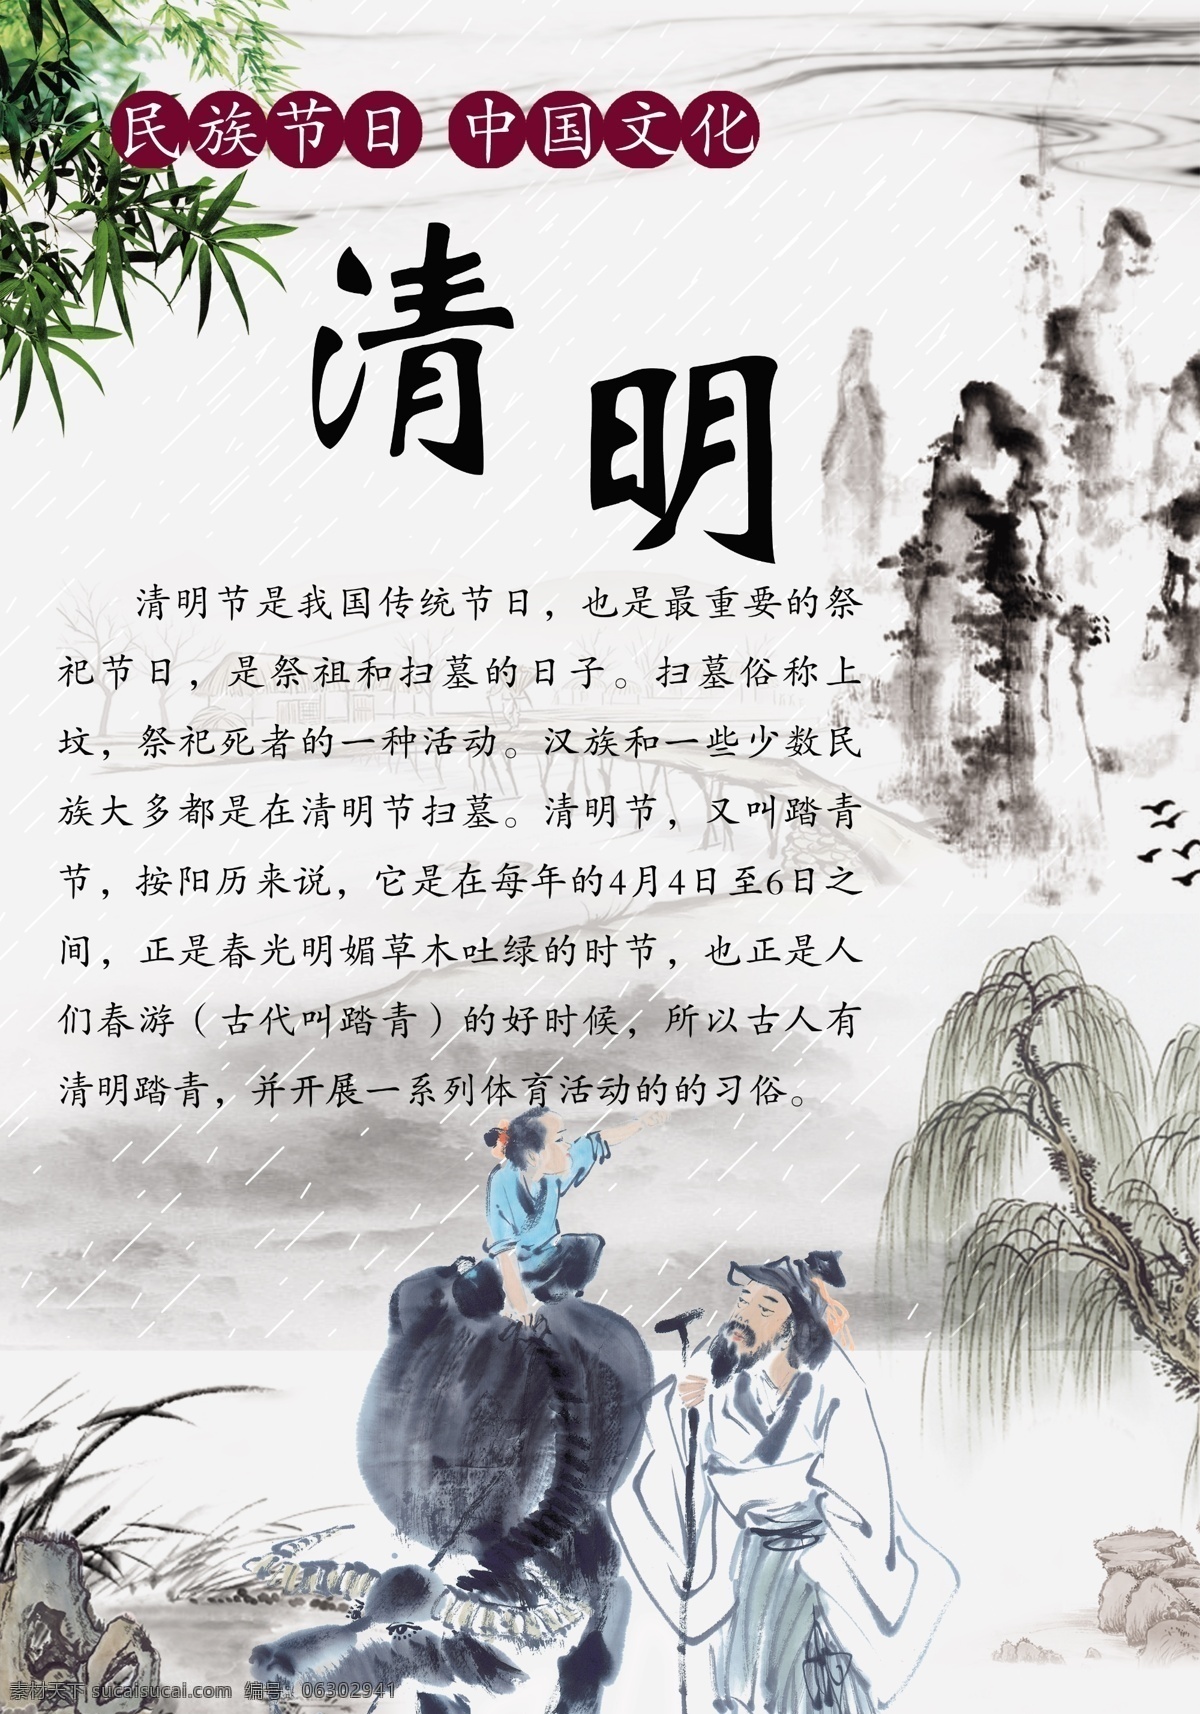 民族 节日 中国 文化 黄牛 牧童 清明节 雨纷纷 原创设计 其他原创设计